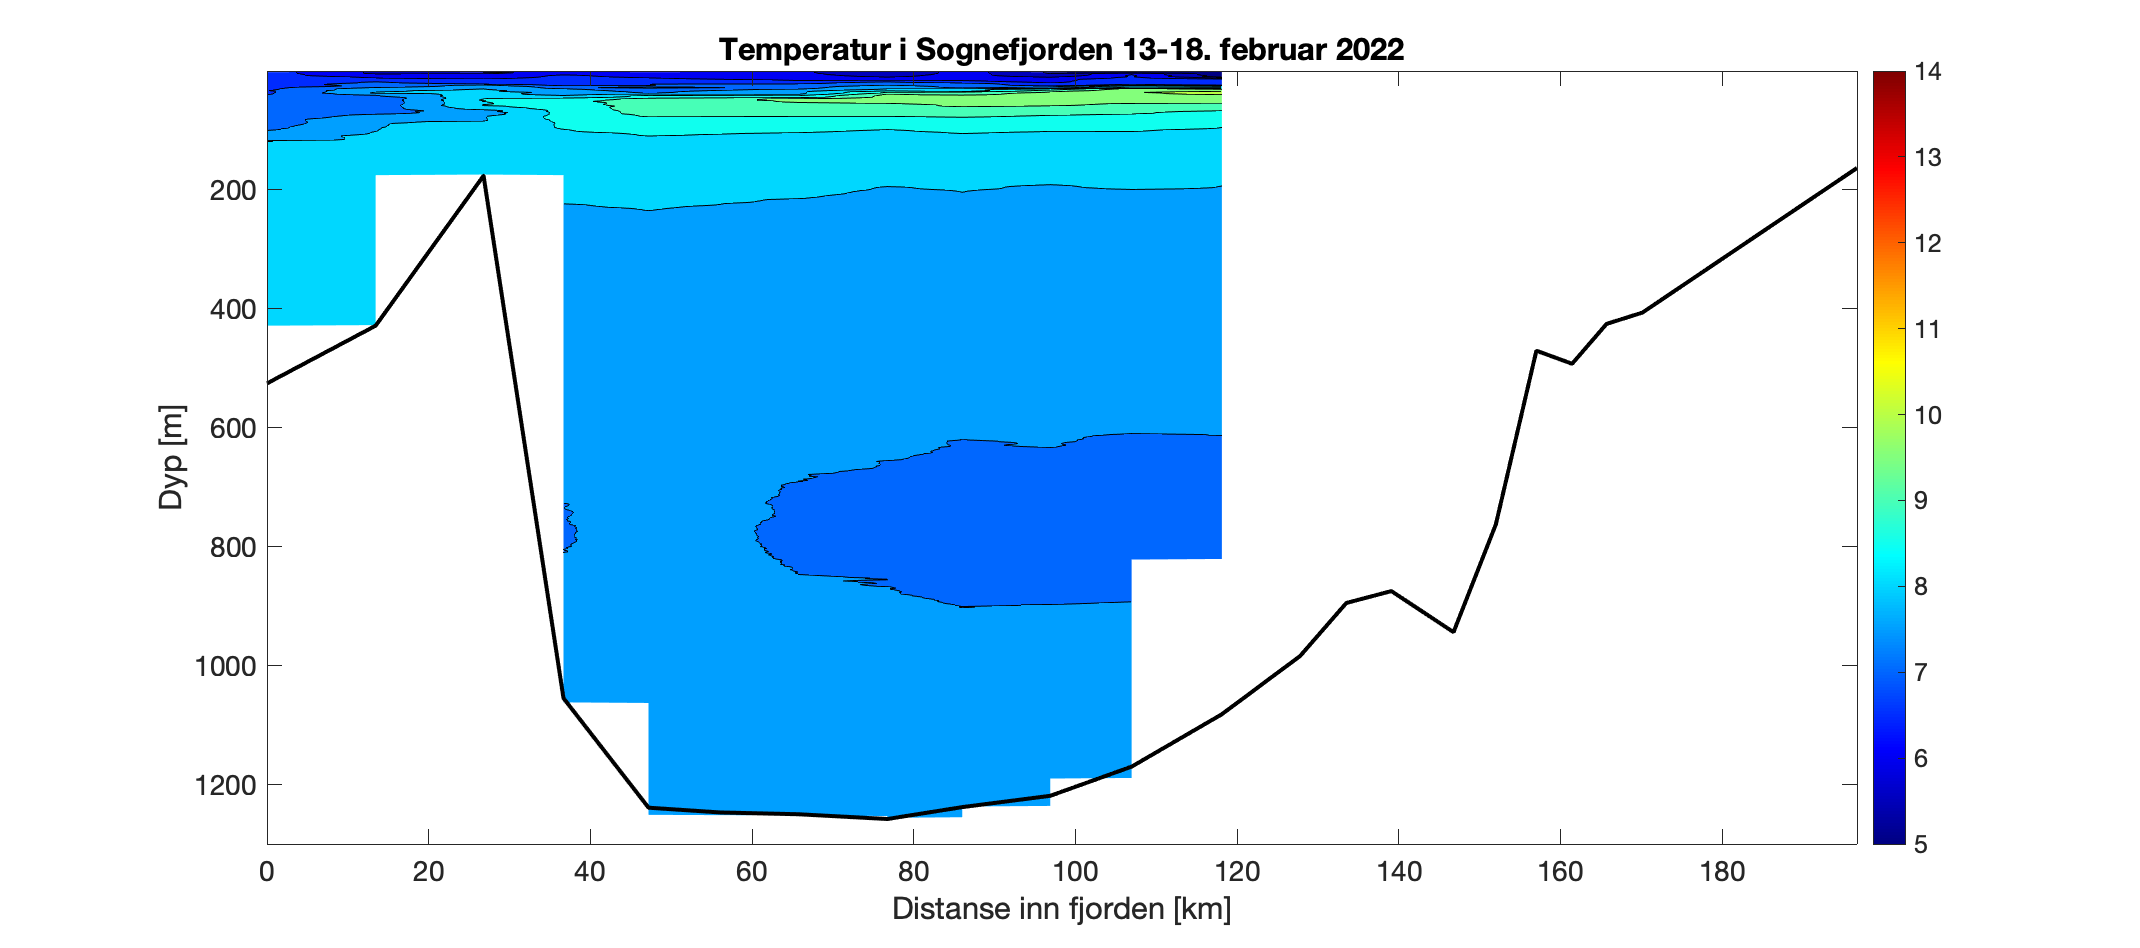 Figuren viser et histogram som illustrer variasjonen i temperatur i vannsøylen (0-1250 meter) innover i Sognefjorden (0-200 km inn i fjorden, men målingene går fra 0-120 km). Fargeskalaen representerer temperatur fra 14°C (rødt) til 5°C (fiolett). Det er høyest variasjon i de øverste 100 m, og kaldt overflatevann i hele fjorden. I fjordbassenget (dypere enn 200 m) er det ca. 6,5 – 7,5°C gjennom vannsøylen.